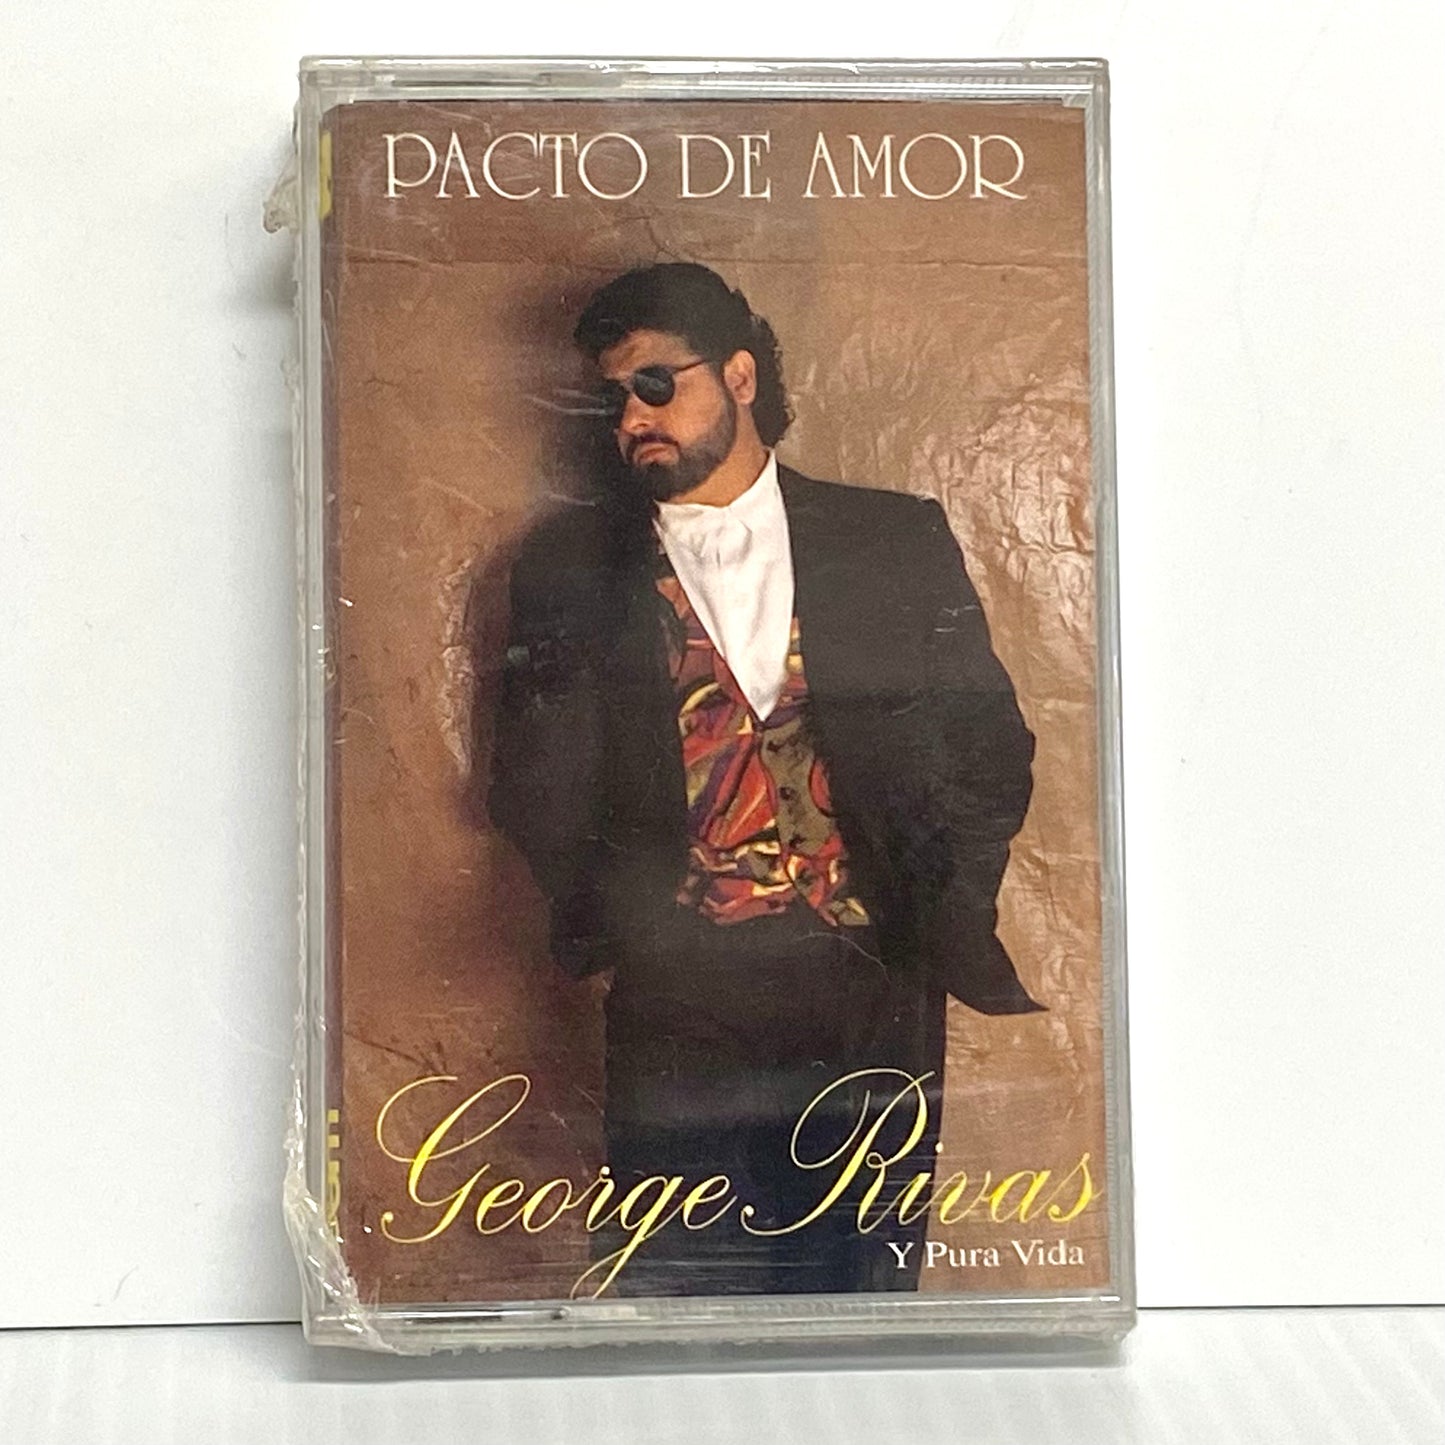 George Rivas Y Pura Vida -Pacto De Amor (Cassette)